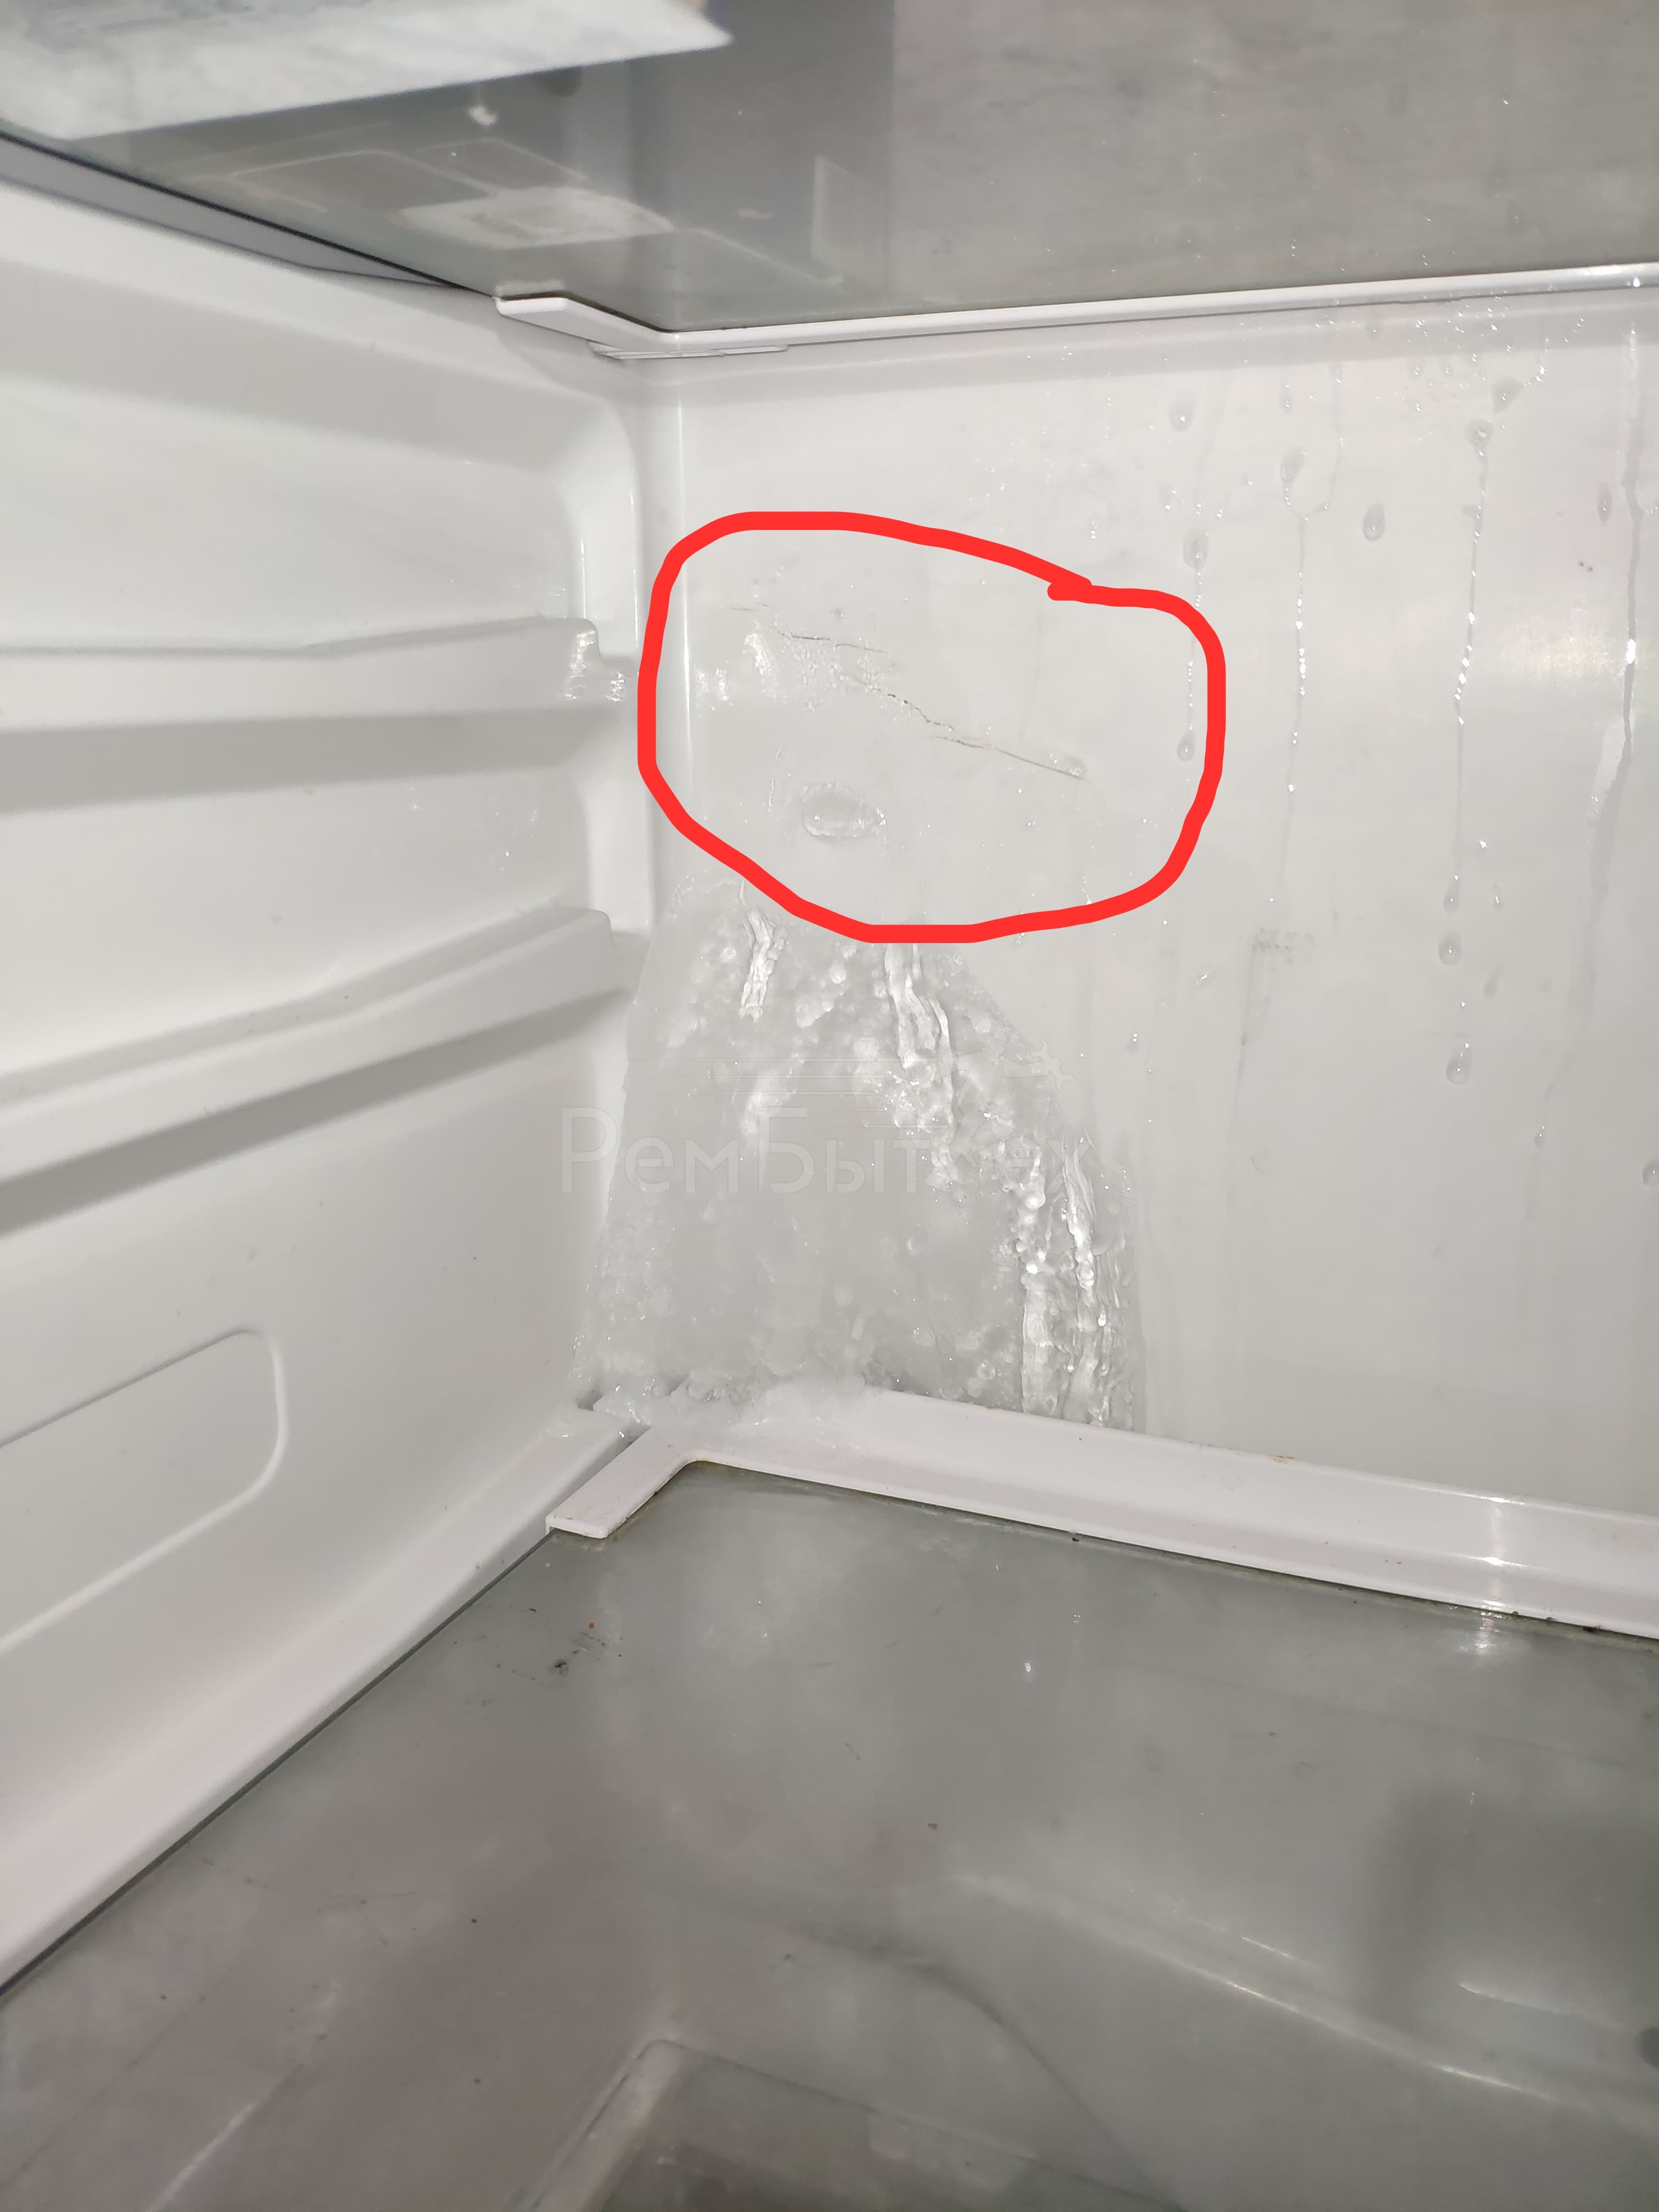 Почему в холодильнике скапливается вода